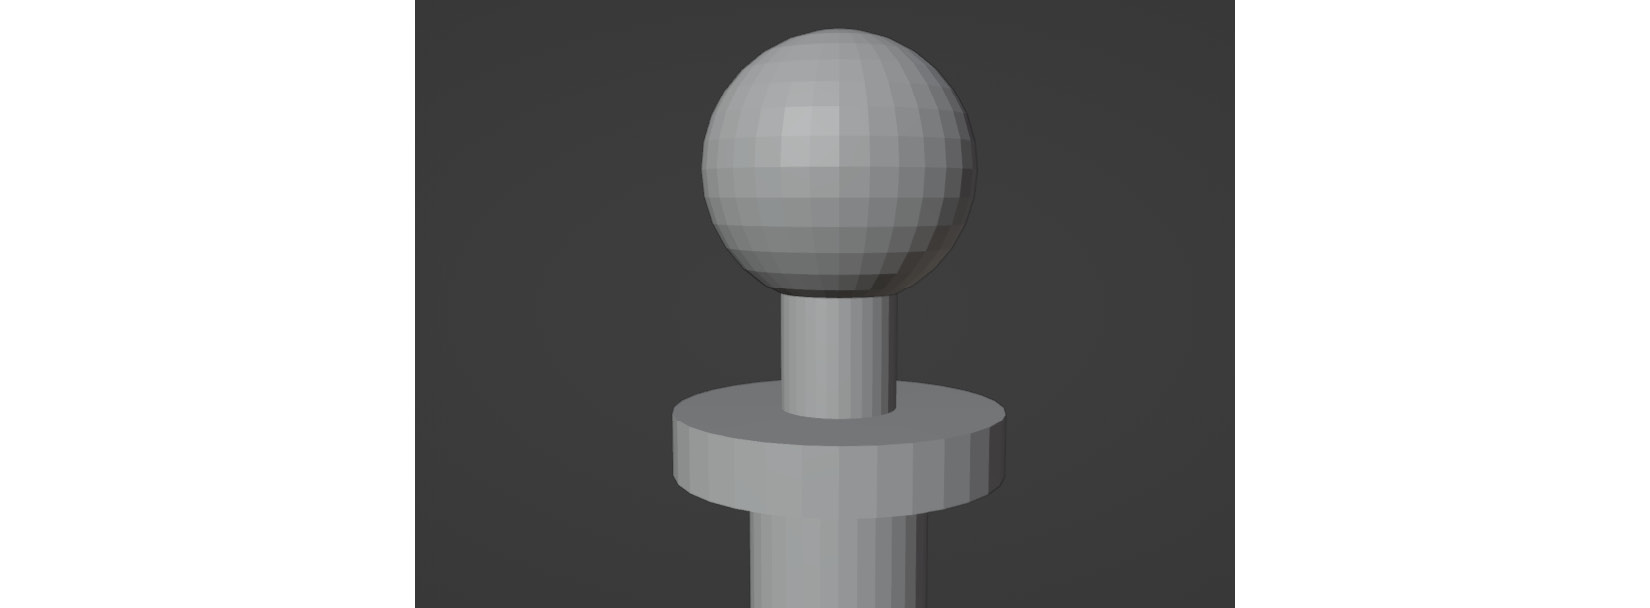 Figure 9.8 – UV sphere added